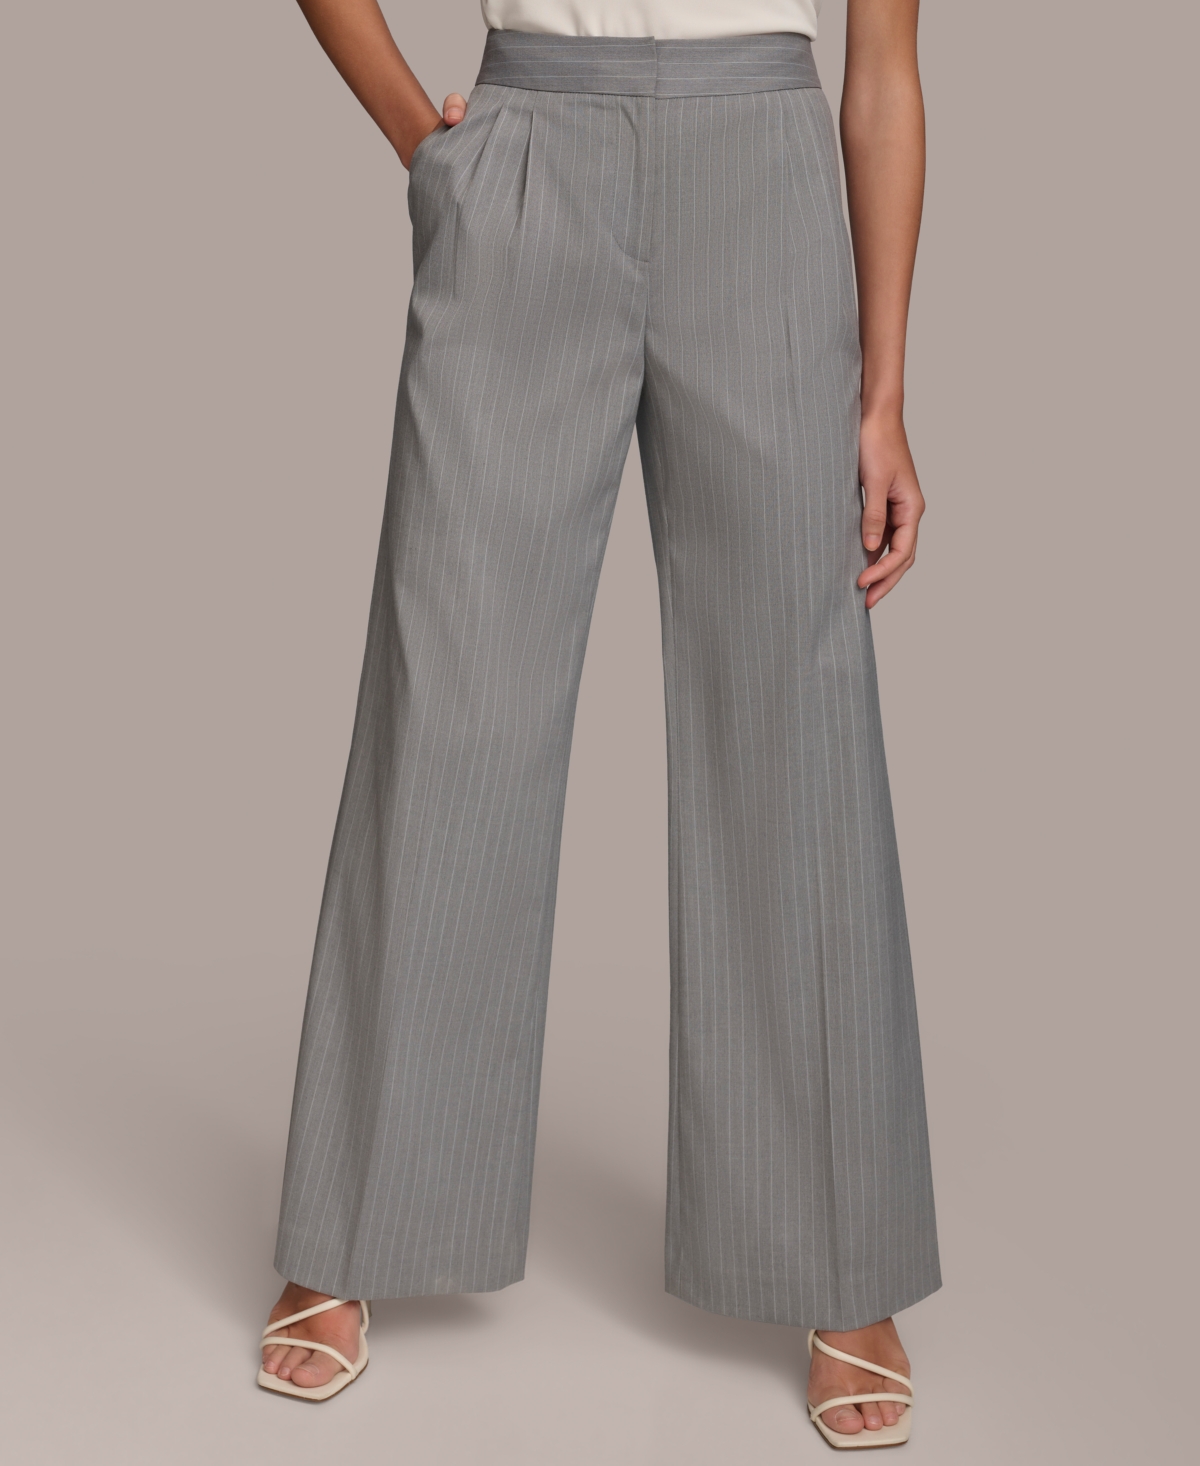 Women's Pinstriped Wide-Leg Pants - Light Gray/White